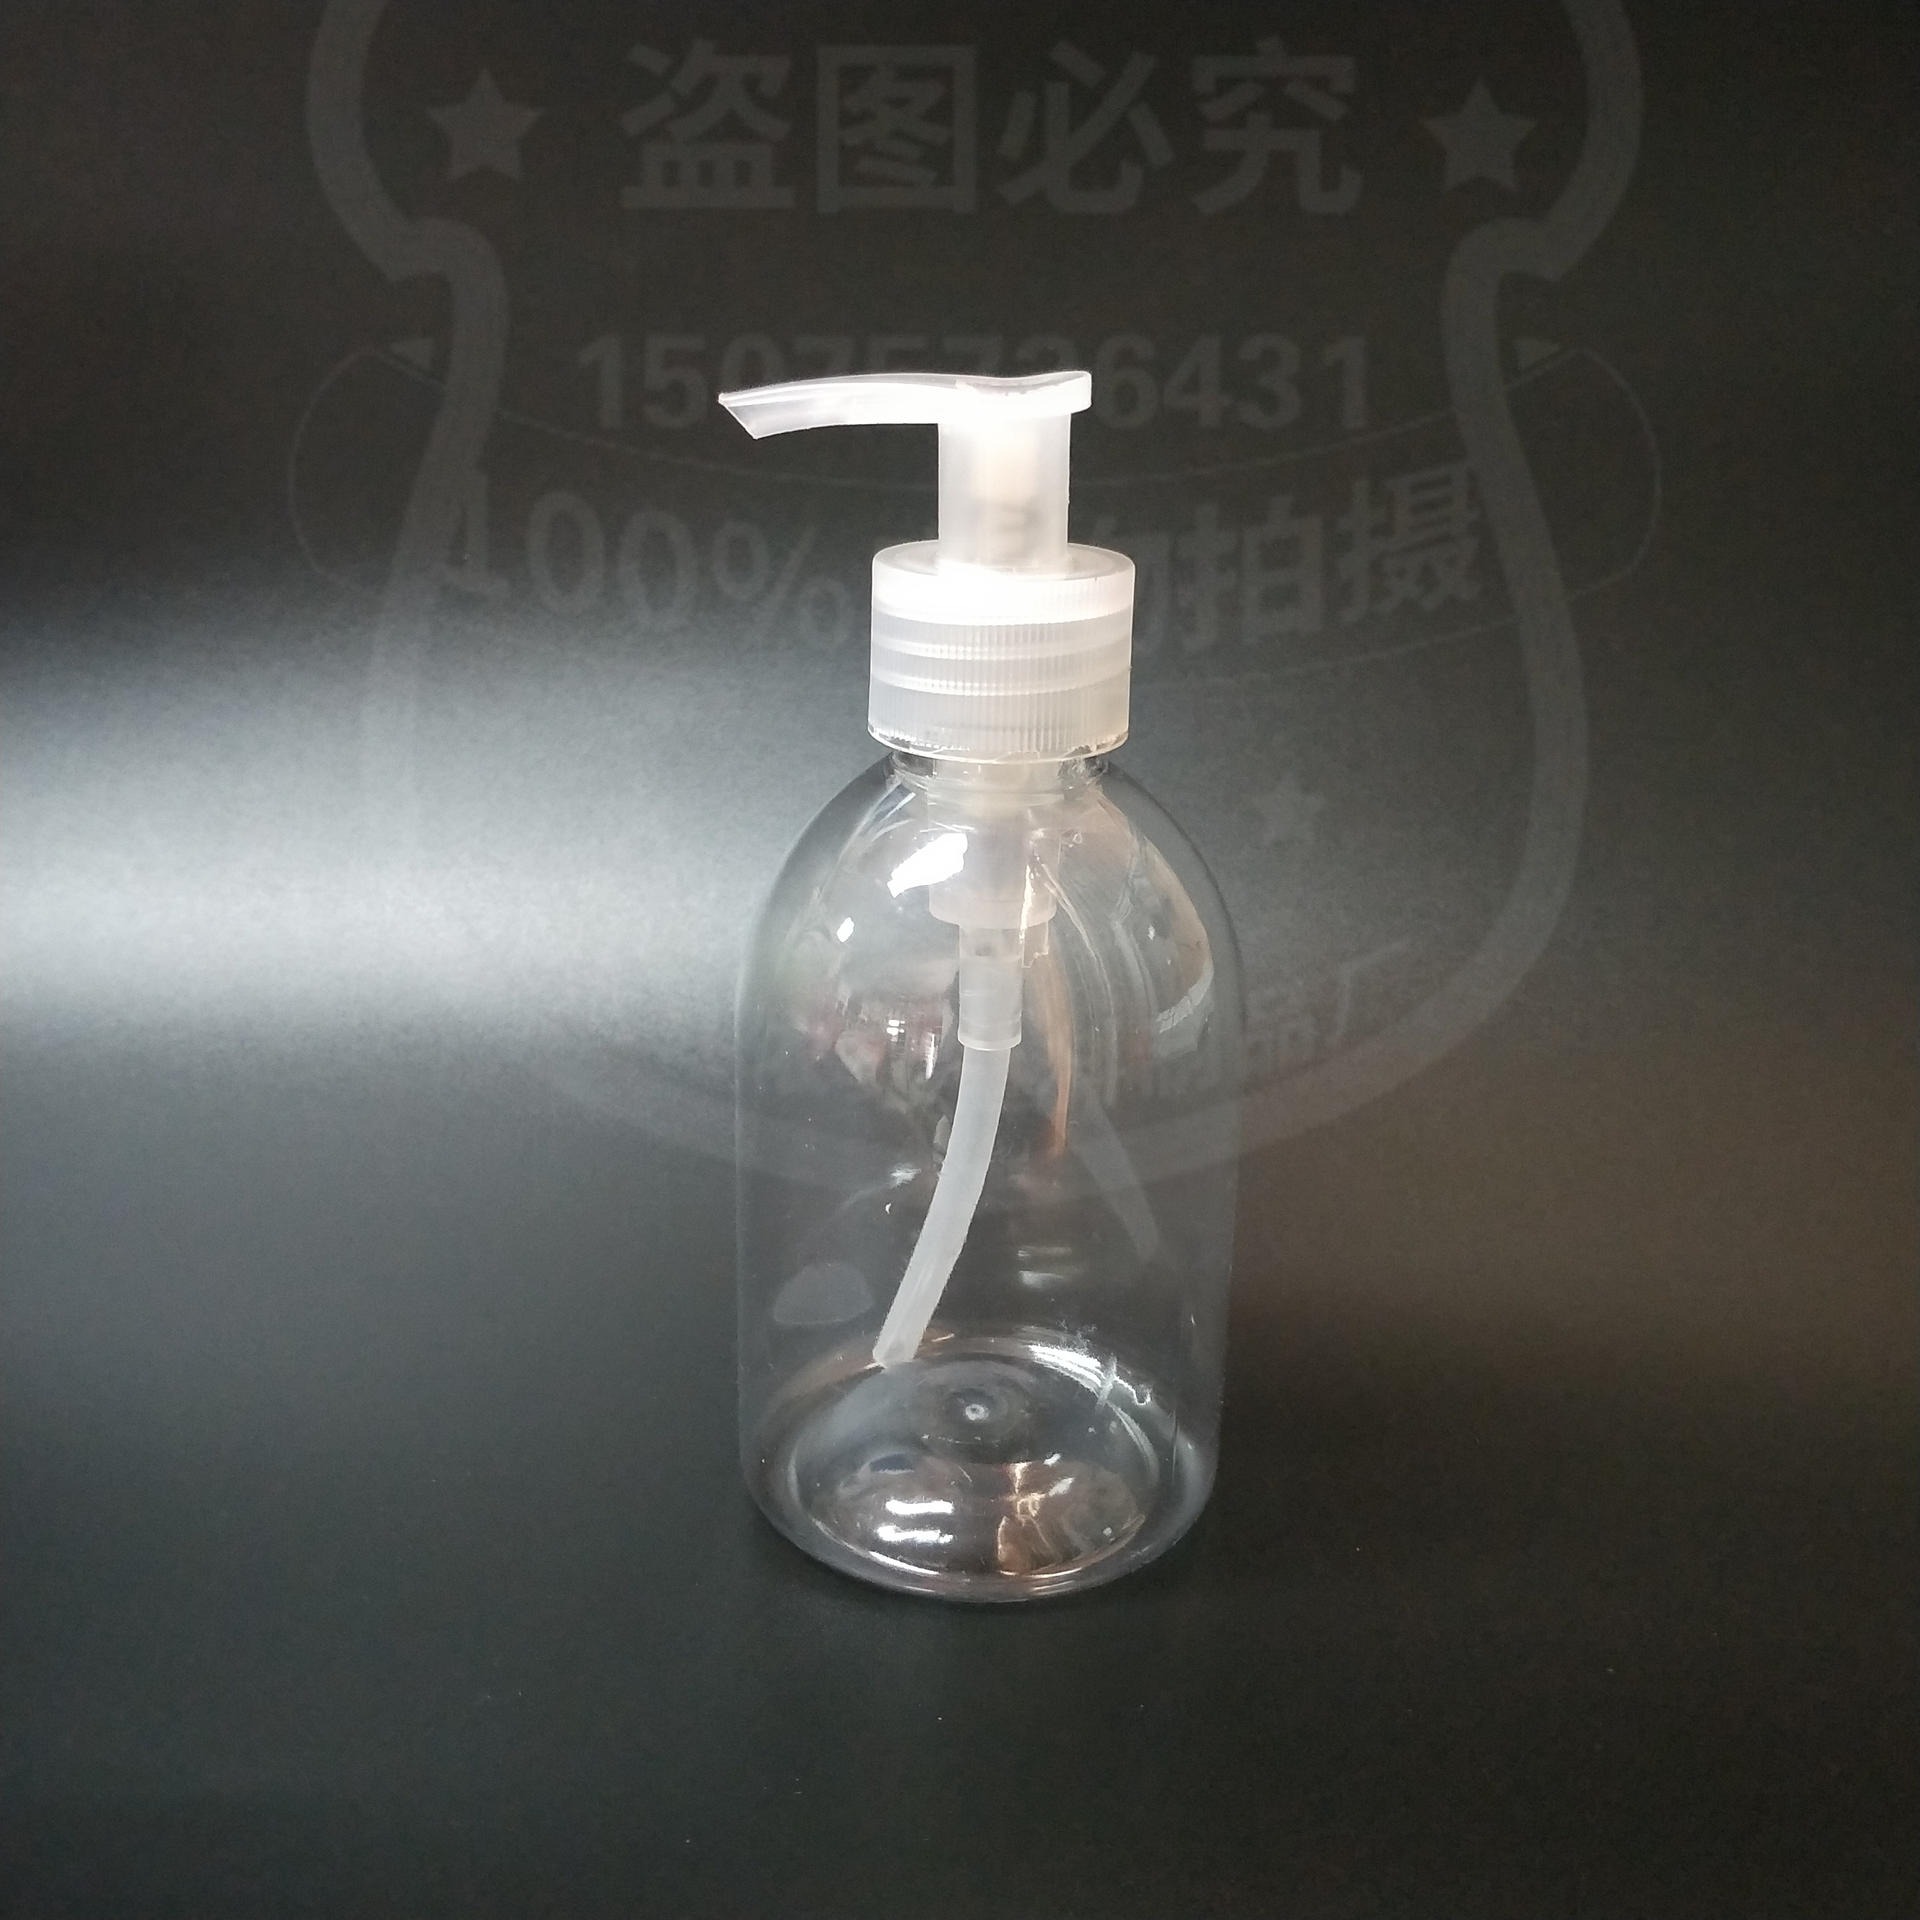 洗手消毒液瓶 依家供应  pet透明塑料瓶  洗手液瓶图片